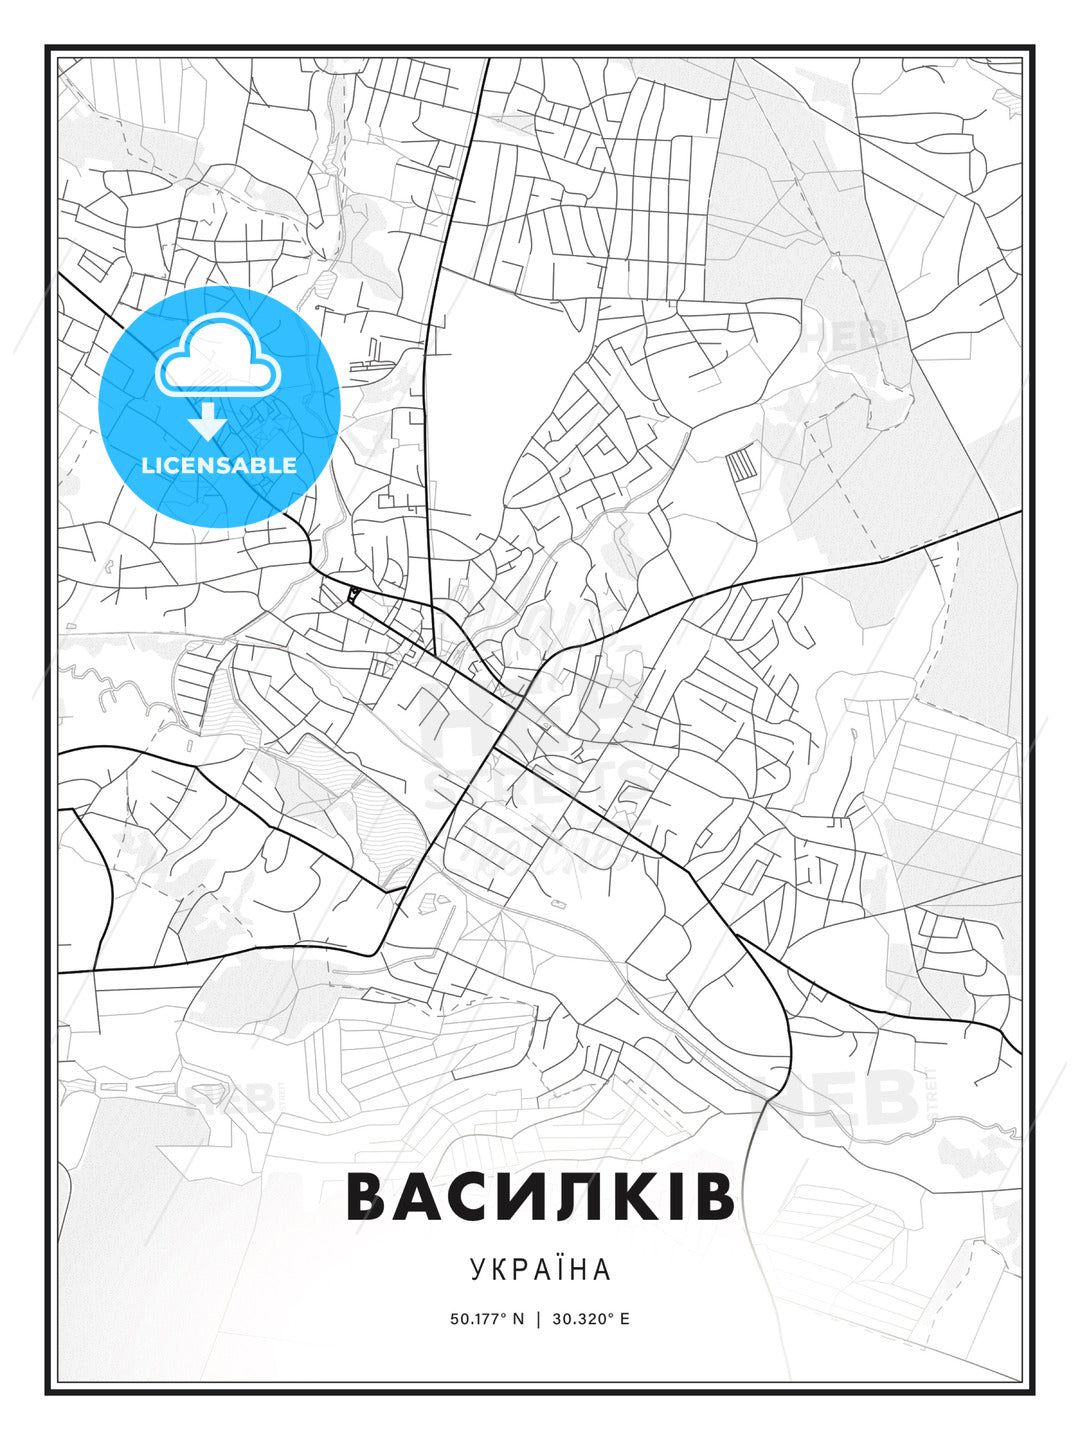 ВАСИЛКІВ / Vasylkiv, Ukraine, Modern Print Template in Various Formats - HEBSTREITS Sketches